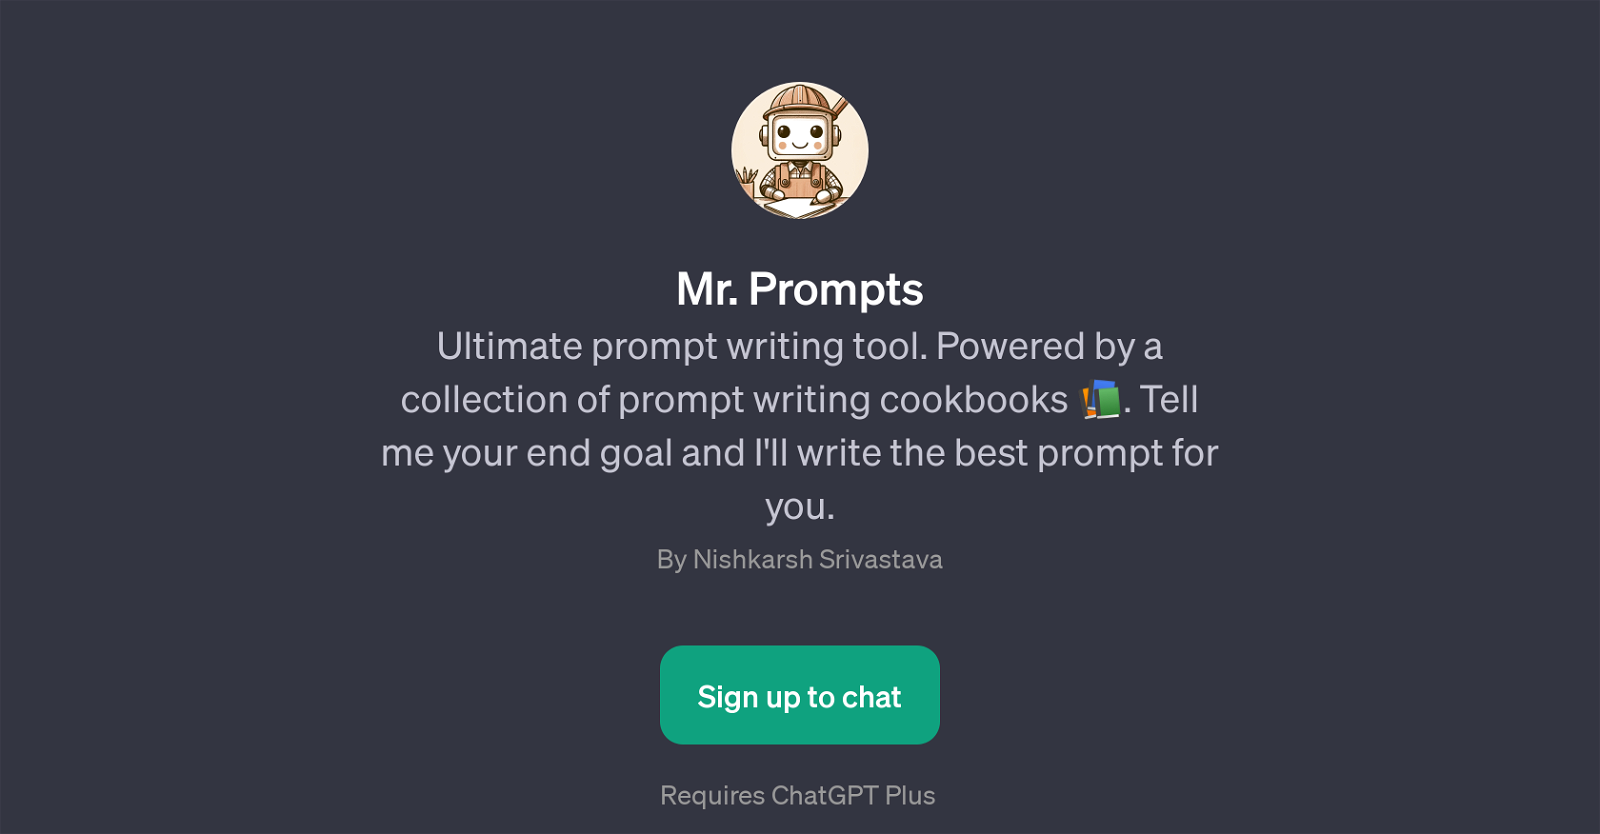 Mr. Prompts website